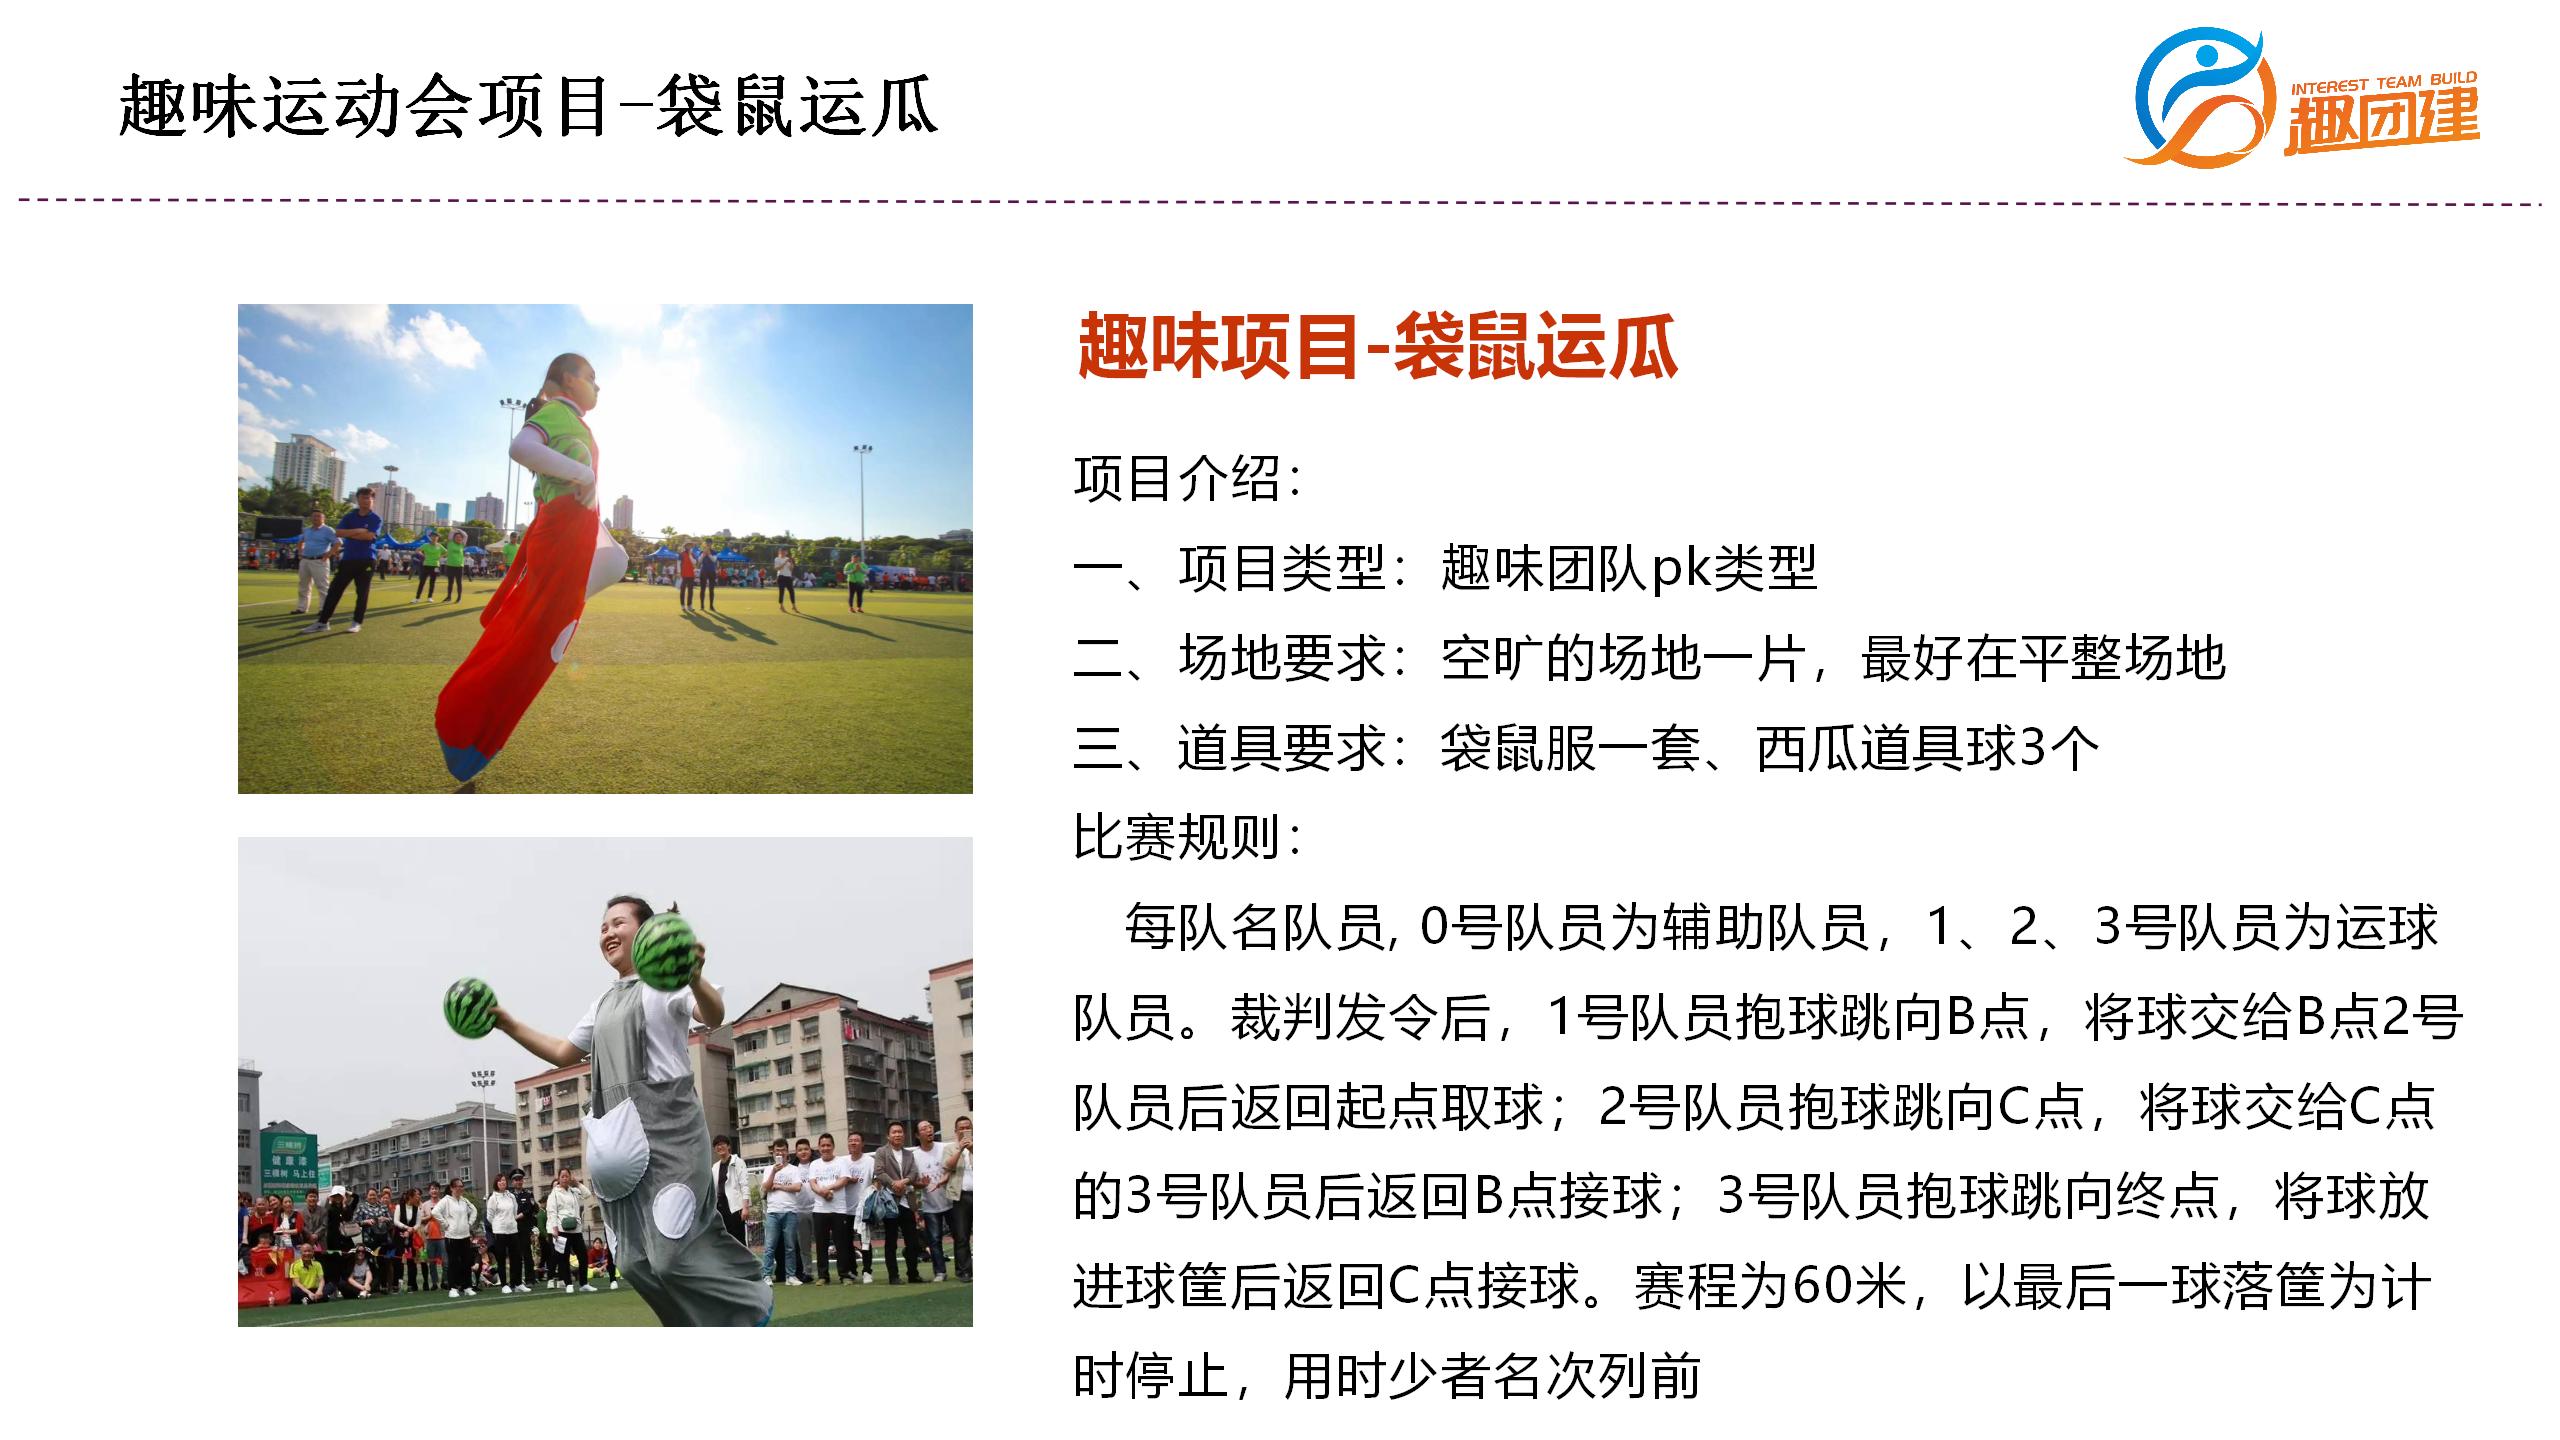 袋鼠运瓜-深圳企业趣味运动会拓展活动项目